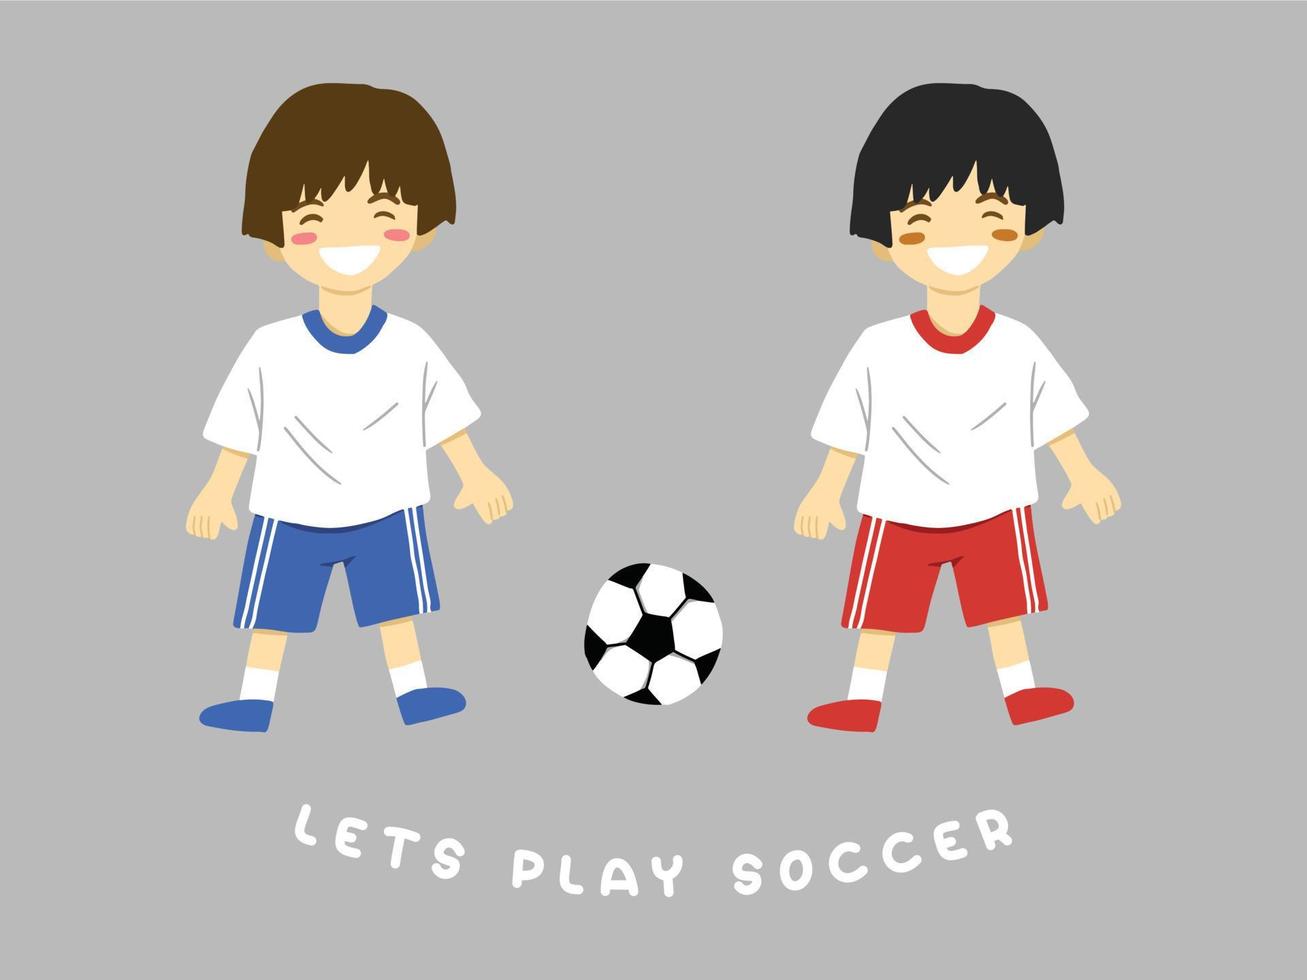 laisse jouer football. vecteur illustration de des gamins en jouant football dans l'eau Couleur style